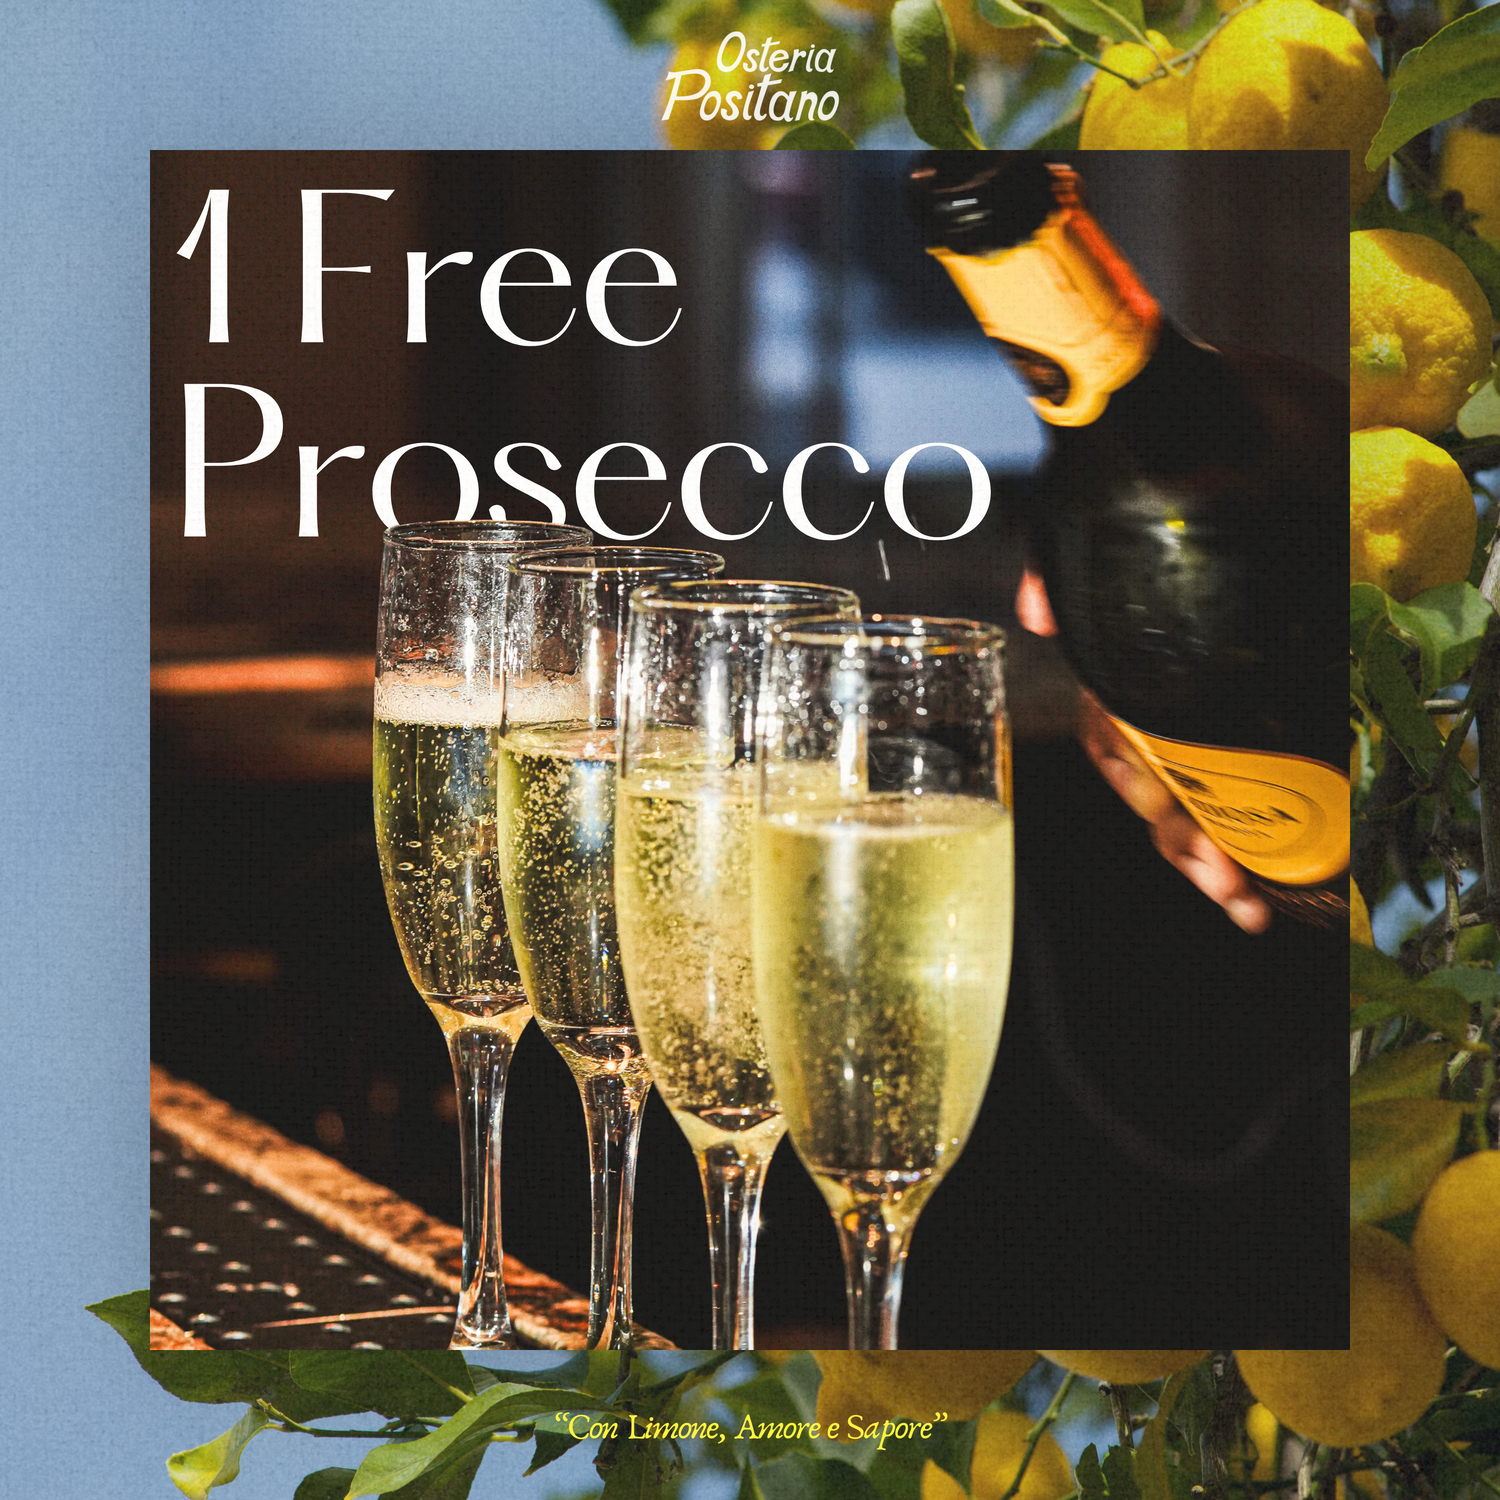 Free Prosecco - "Osteria Positano - Italian restaurant in Miami Beach"